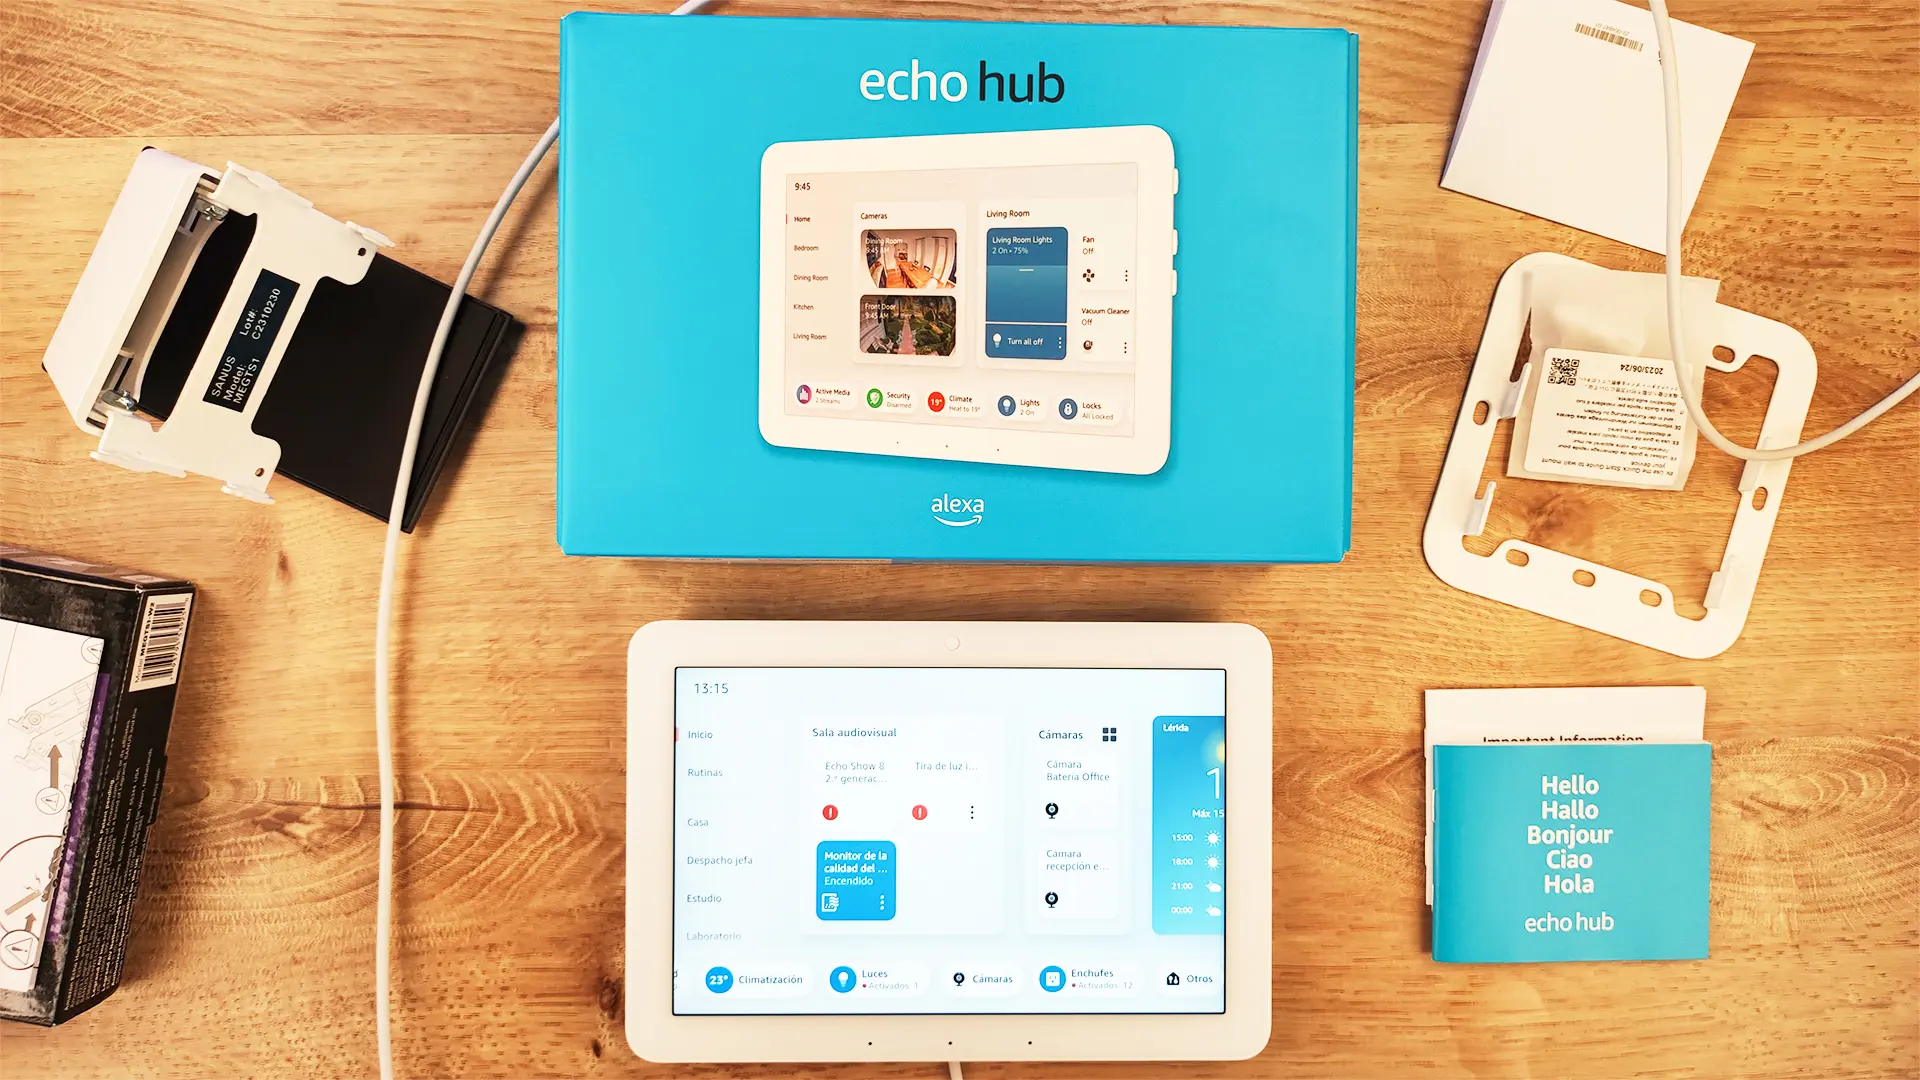 Primeras impresiones tras la puesta en marcha del Echo Hub de Amazon